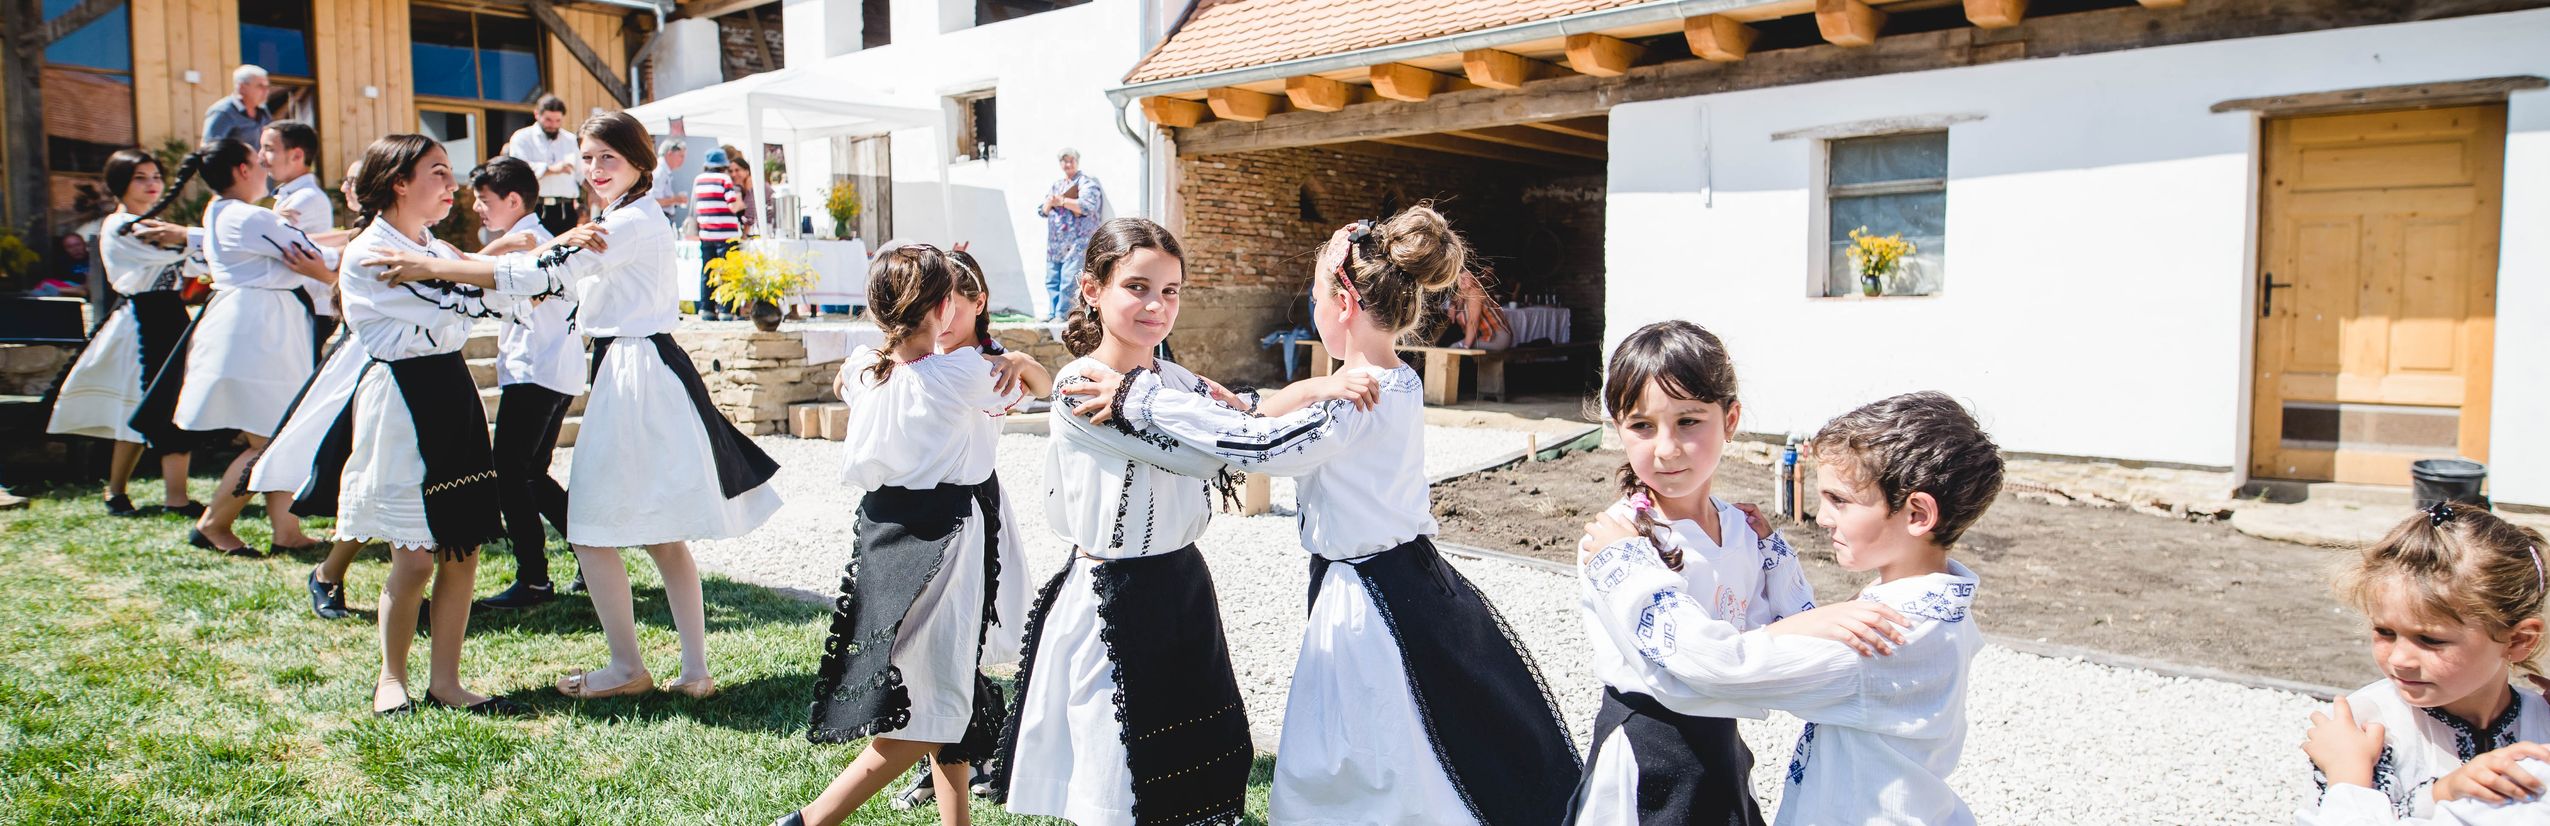 Familienurlaub Osteuropa - Kinder beim traditionellem Tanz